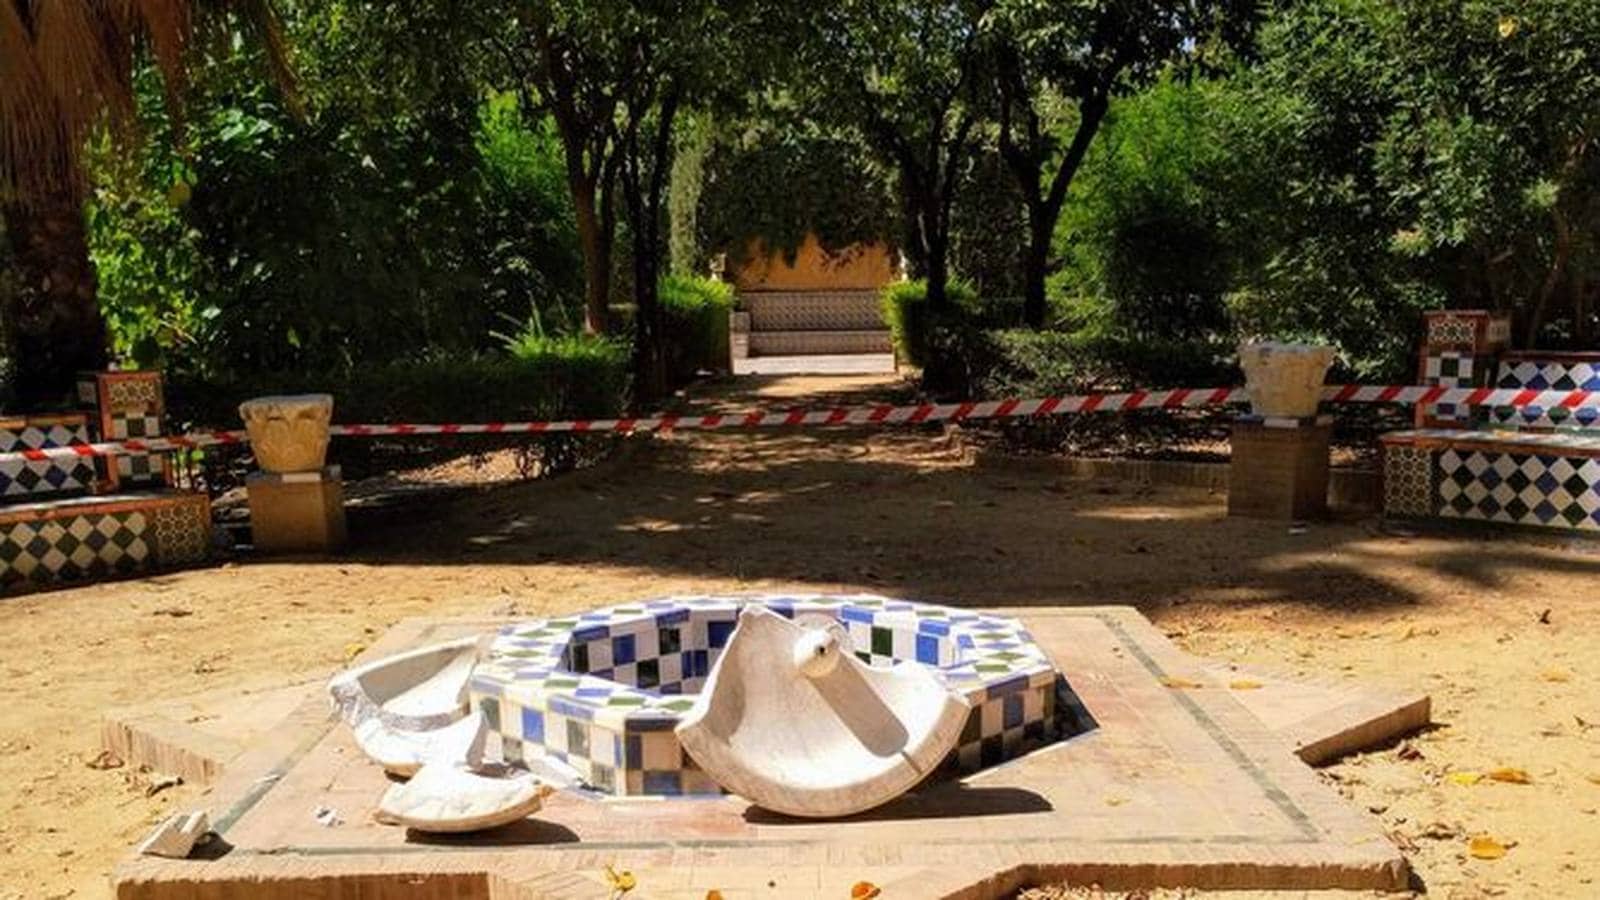 Fotogalería: Ataques al patrimonio en Sevilla